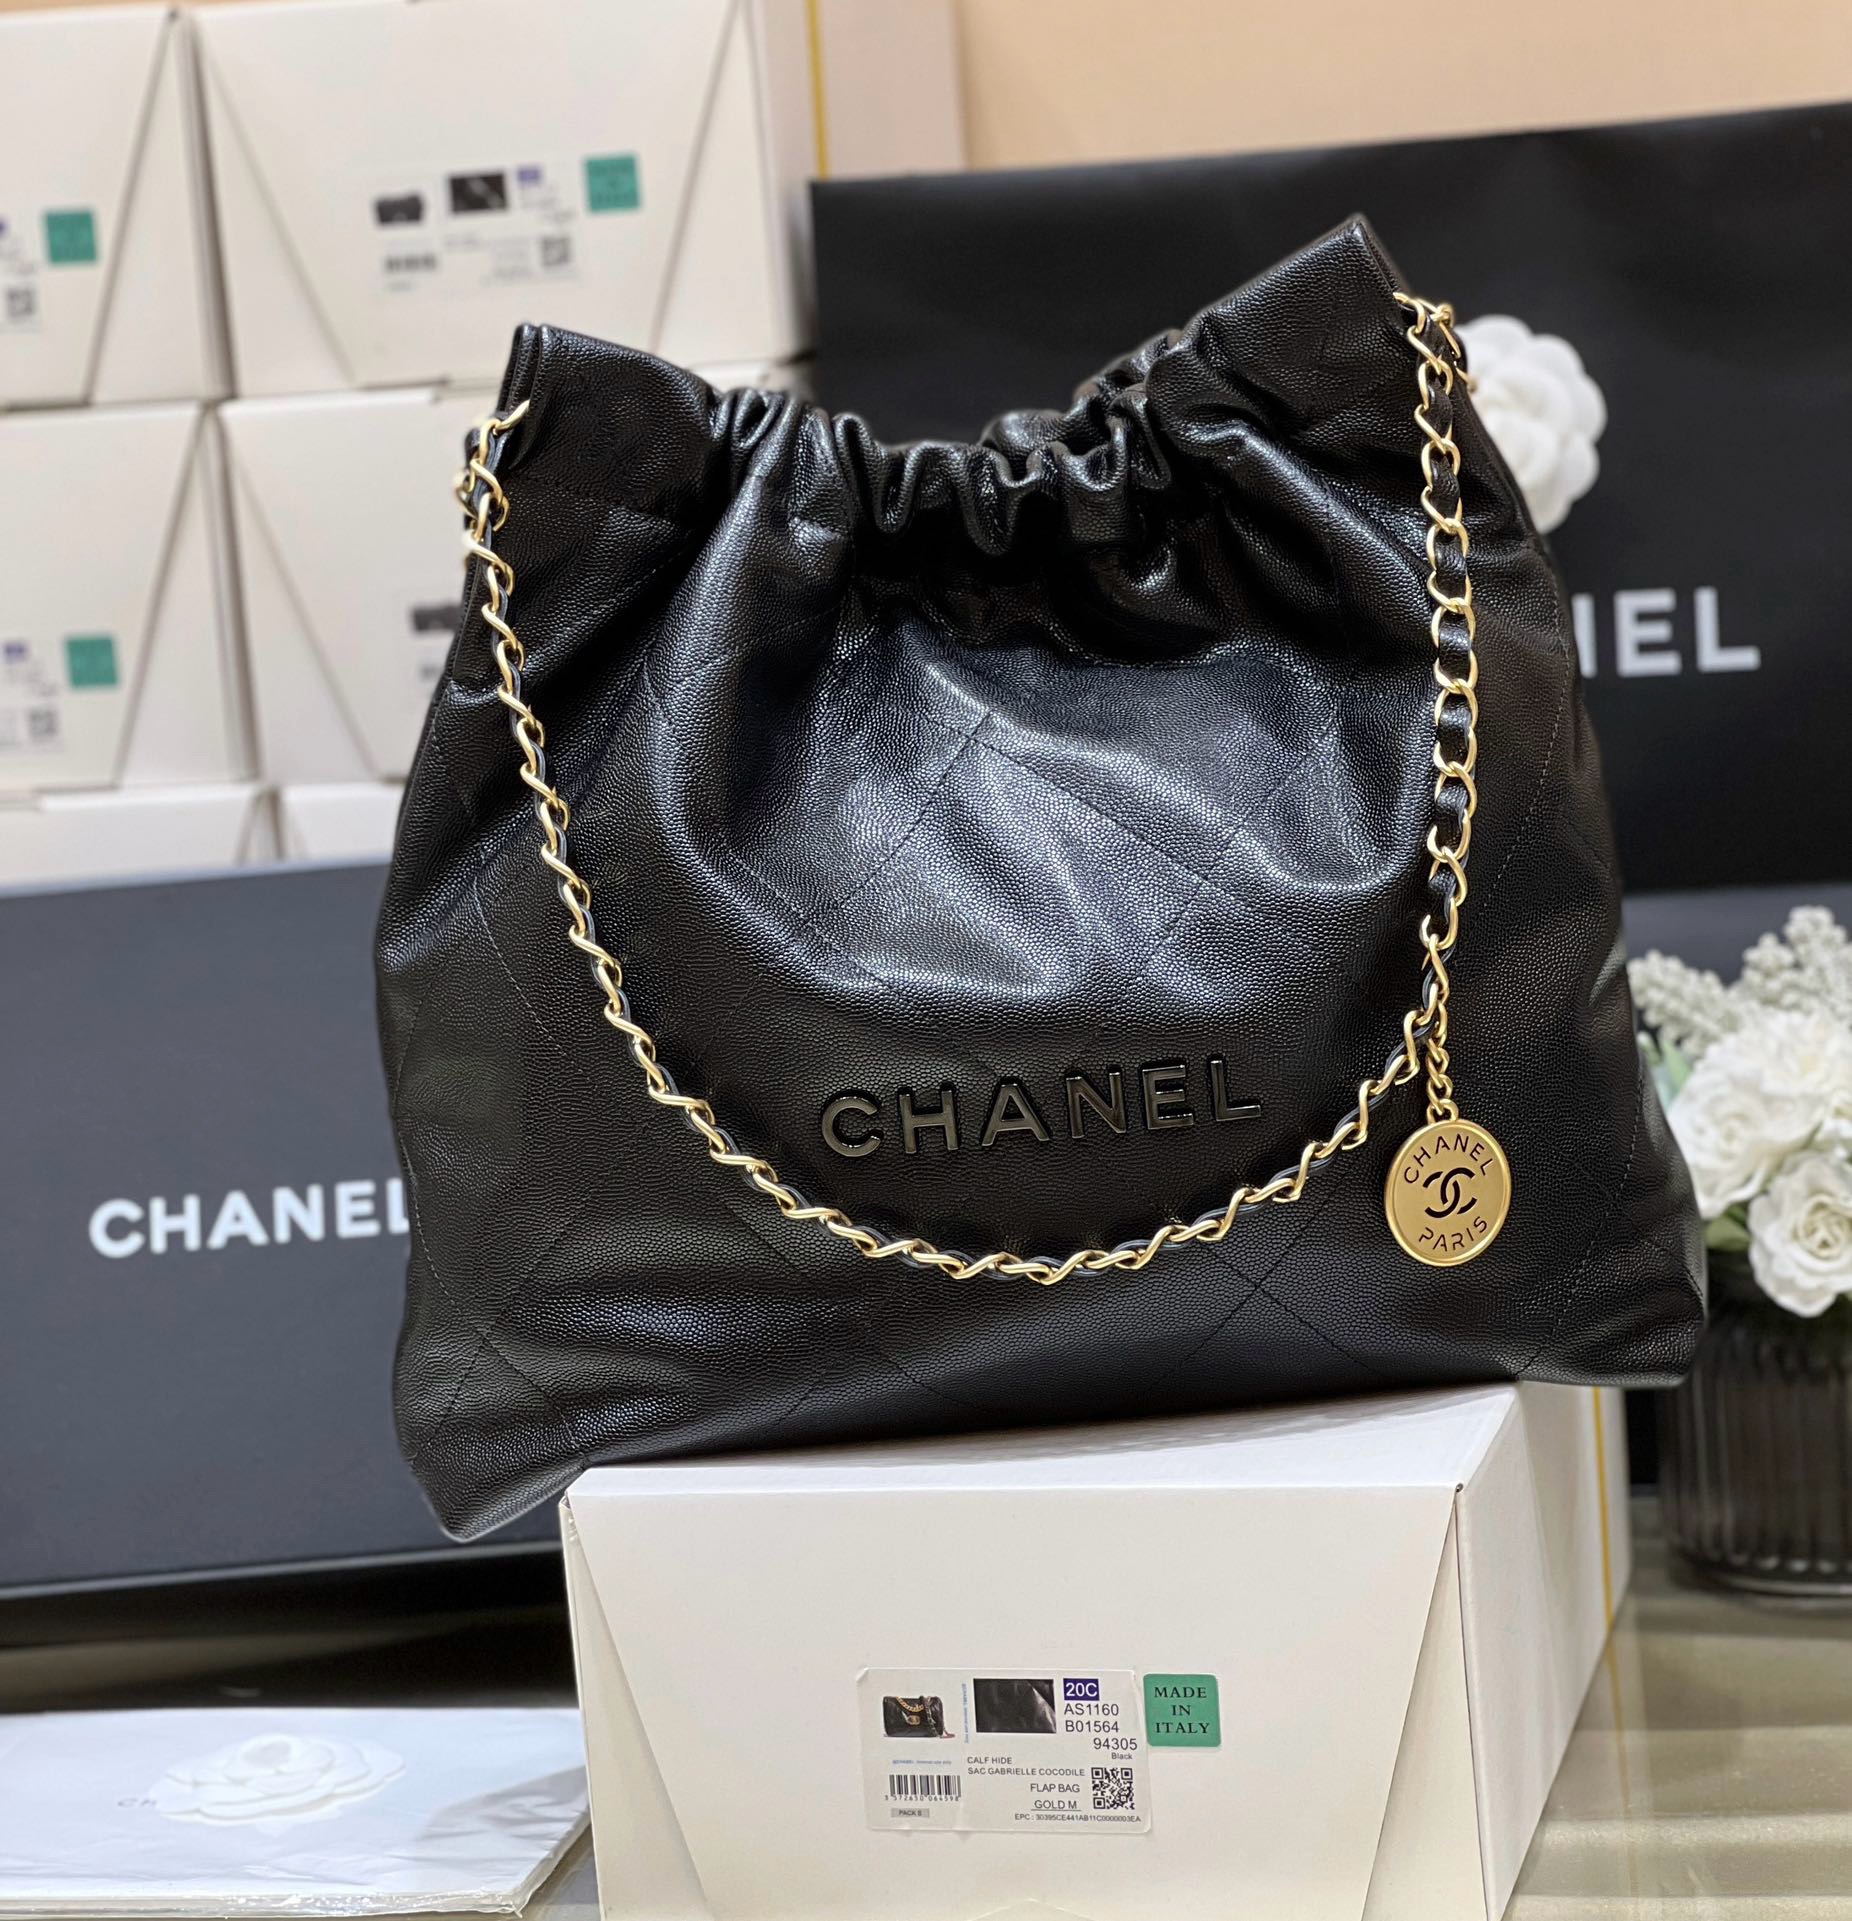 Chanel 22 Medium Handbag - Kaialux